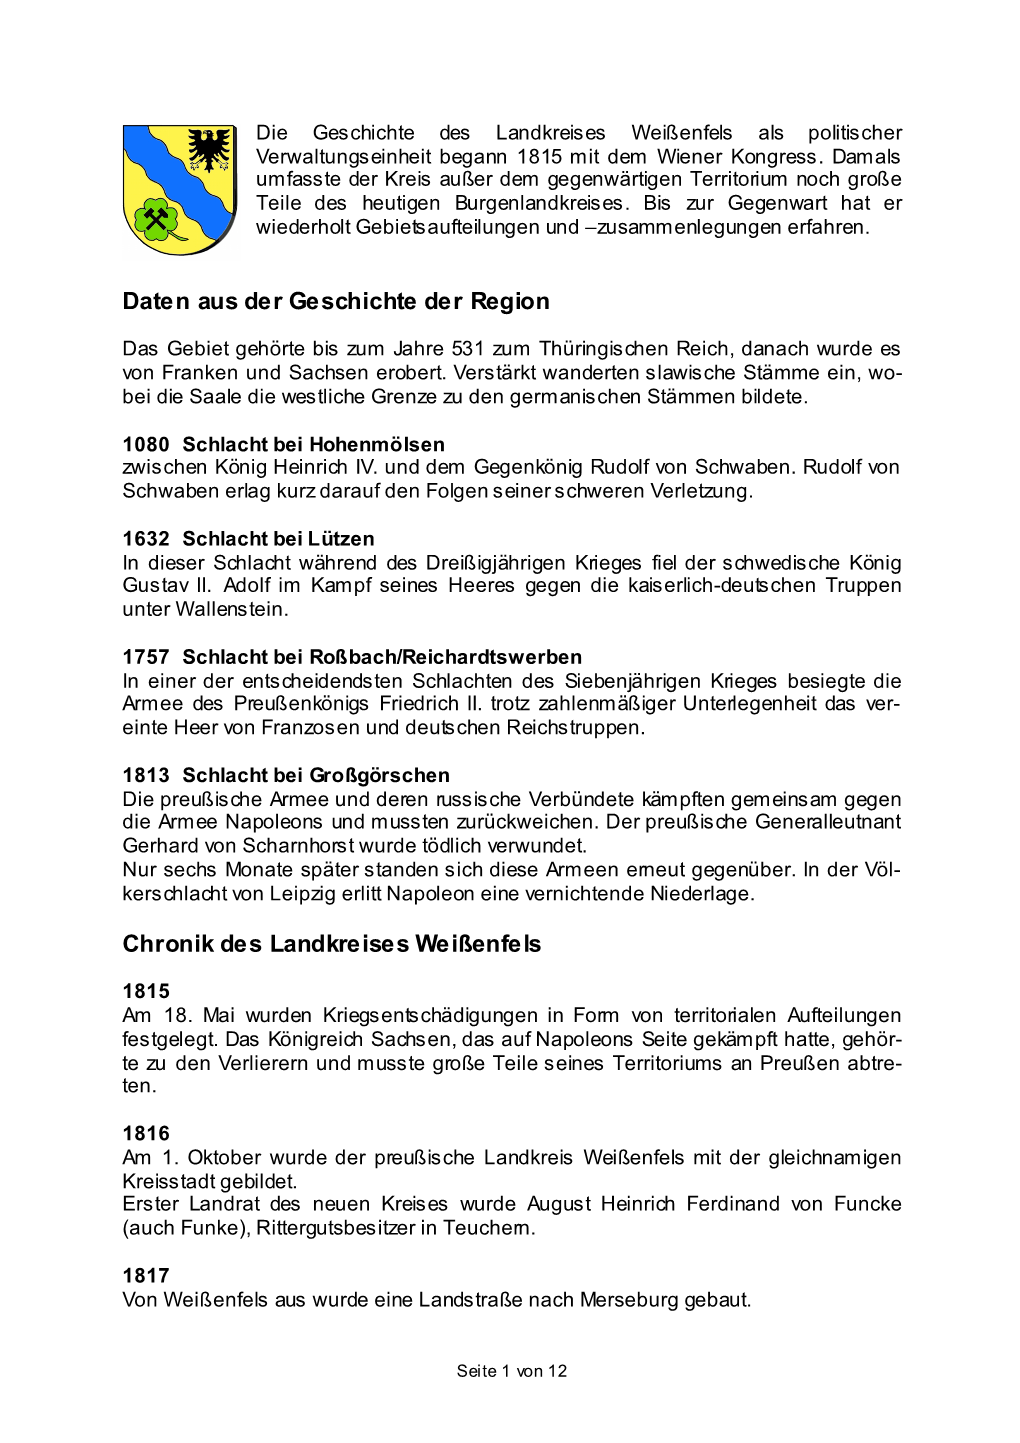 Daten Aus Der Geschichte Der Region Chronik Des Landkreises Weißenfels